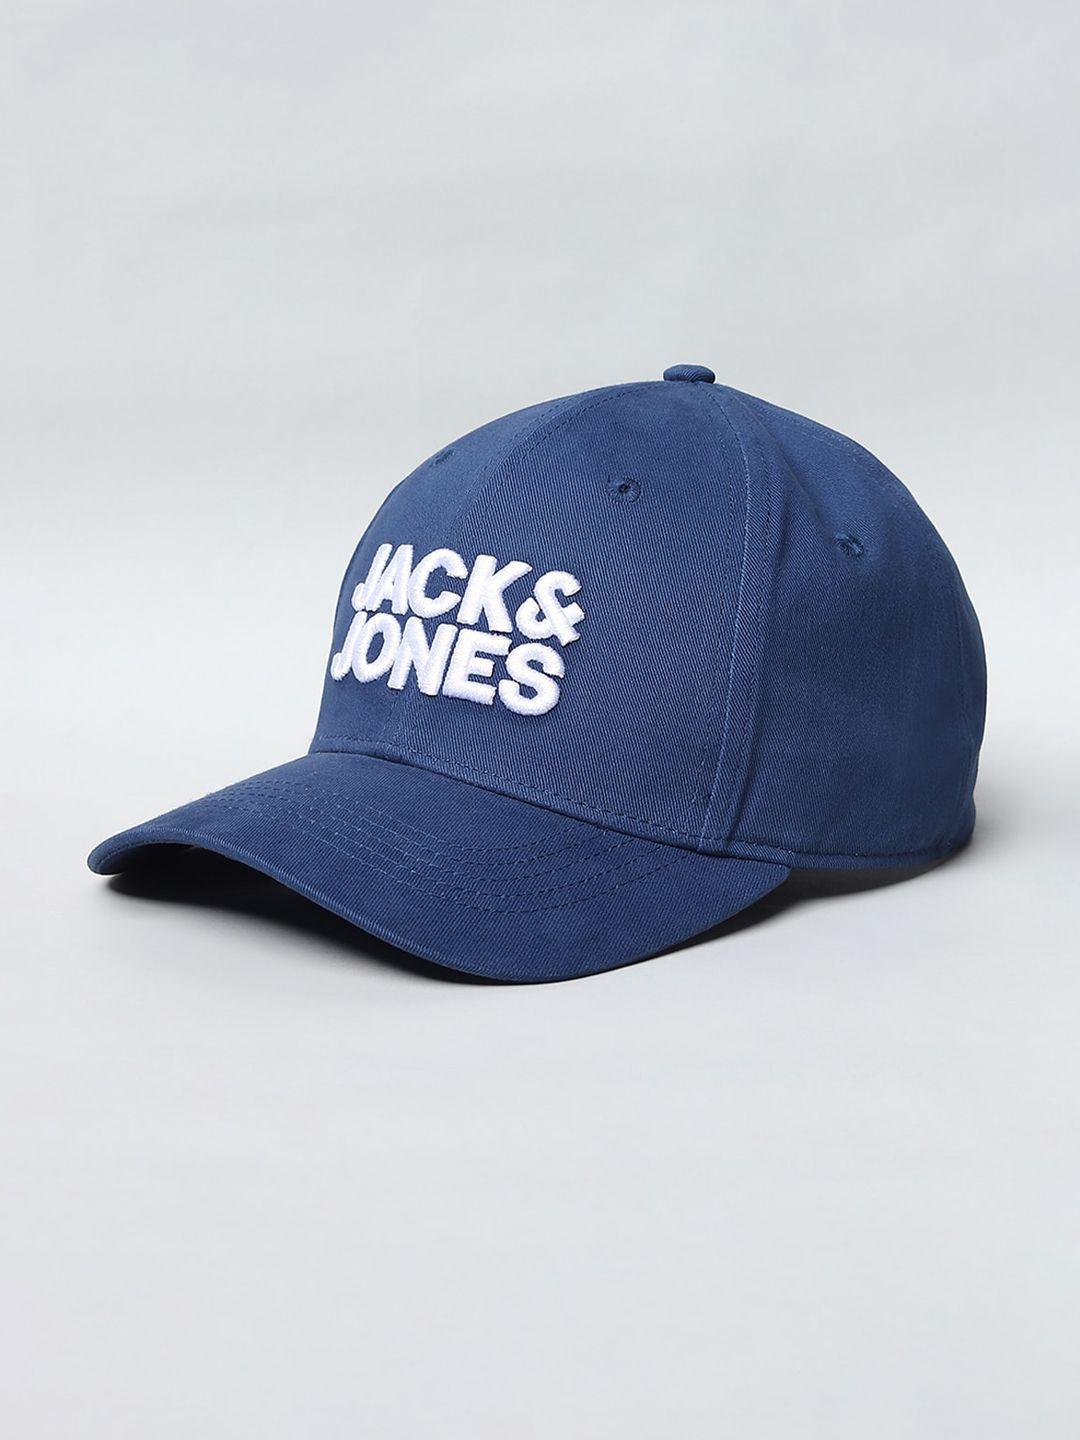 jack & jones men navy blue & white embroidered baseball cap